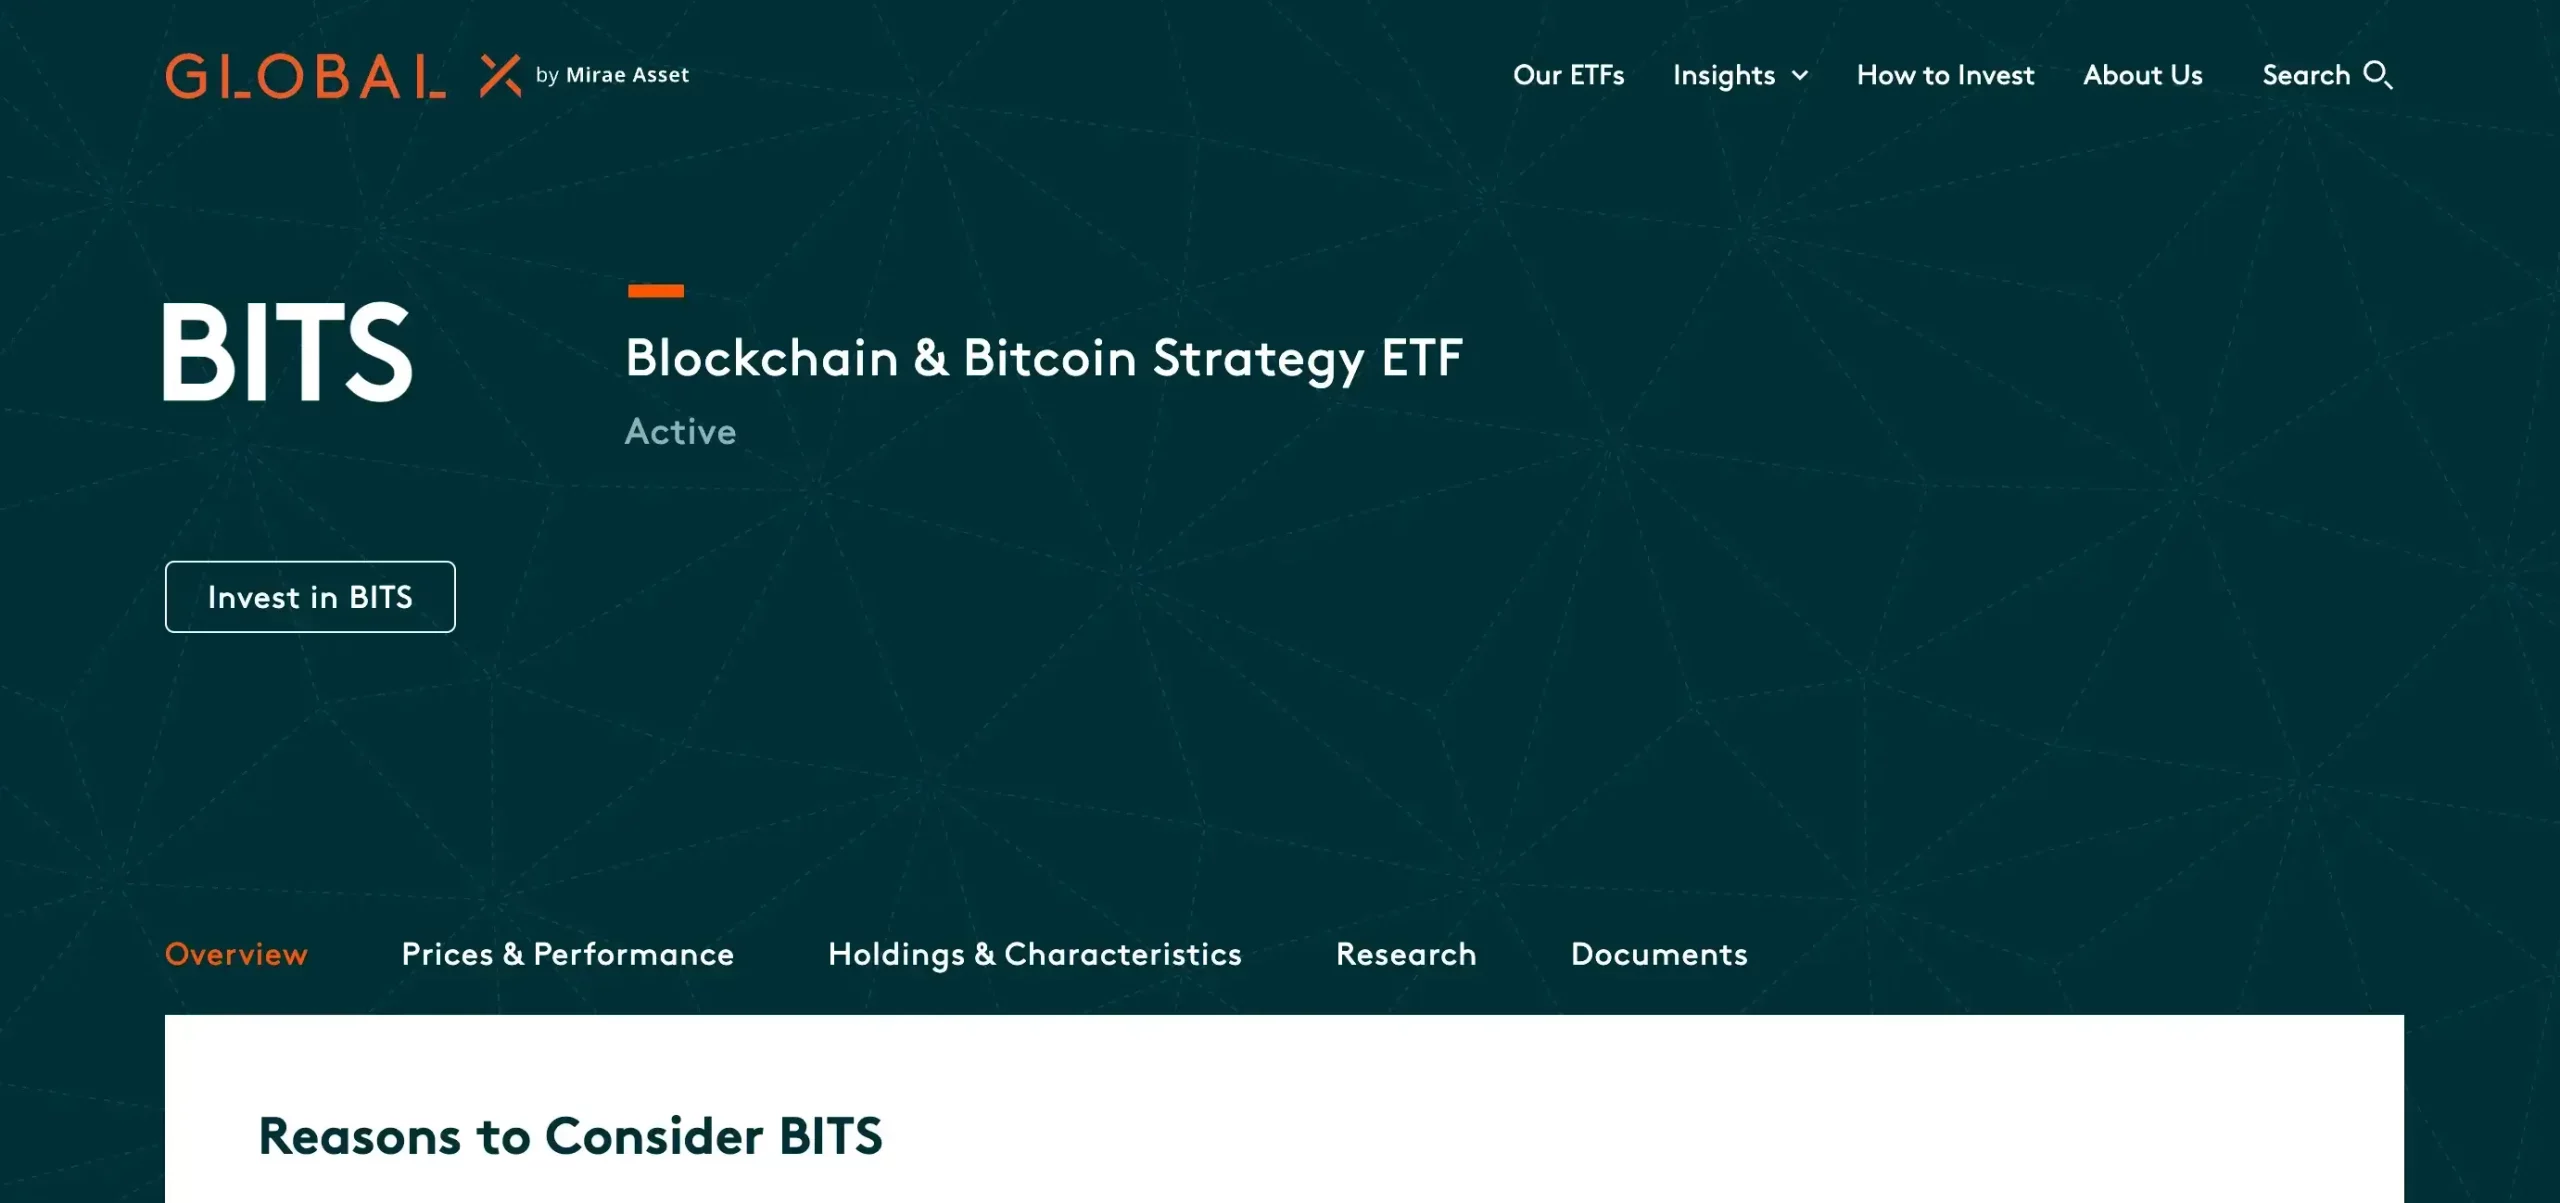 8. Global X Blockchain & Bitcoin Strategy ETF (BITS)